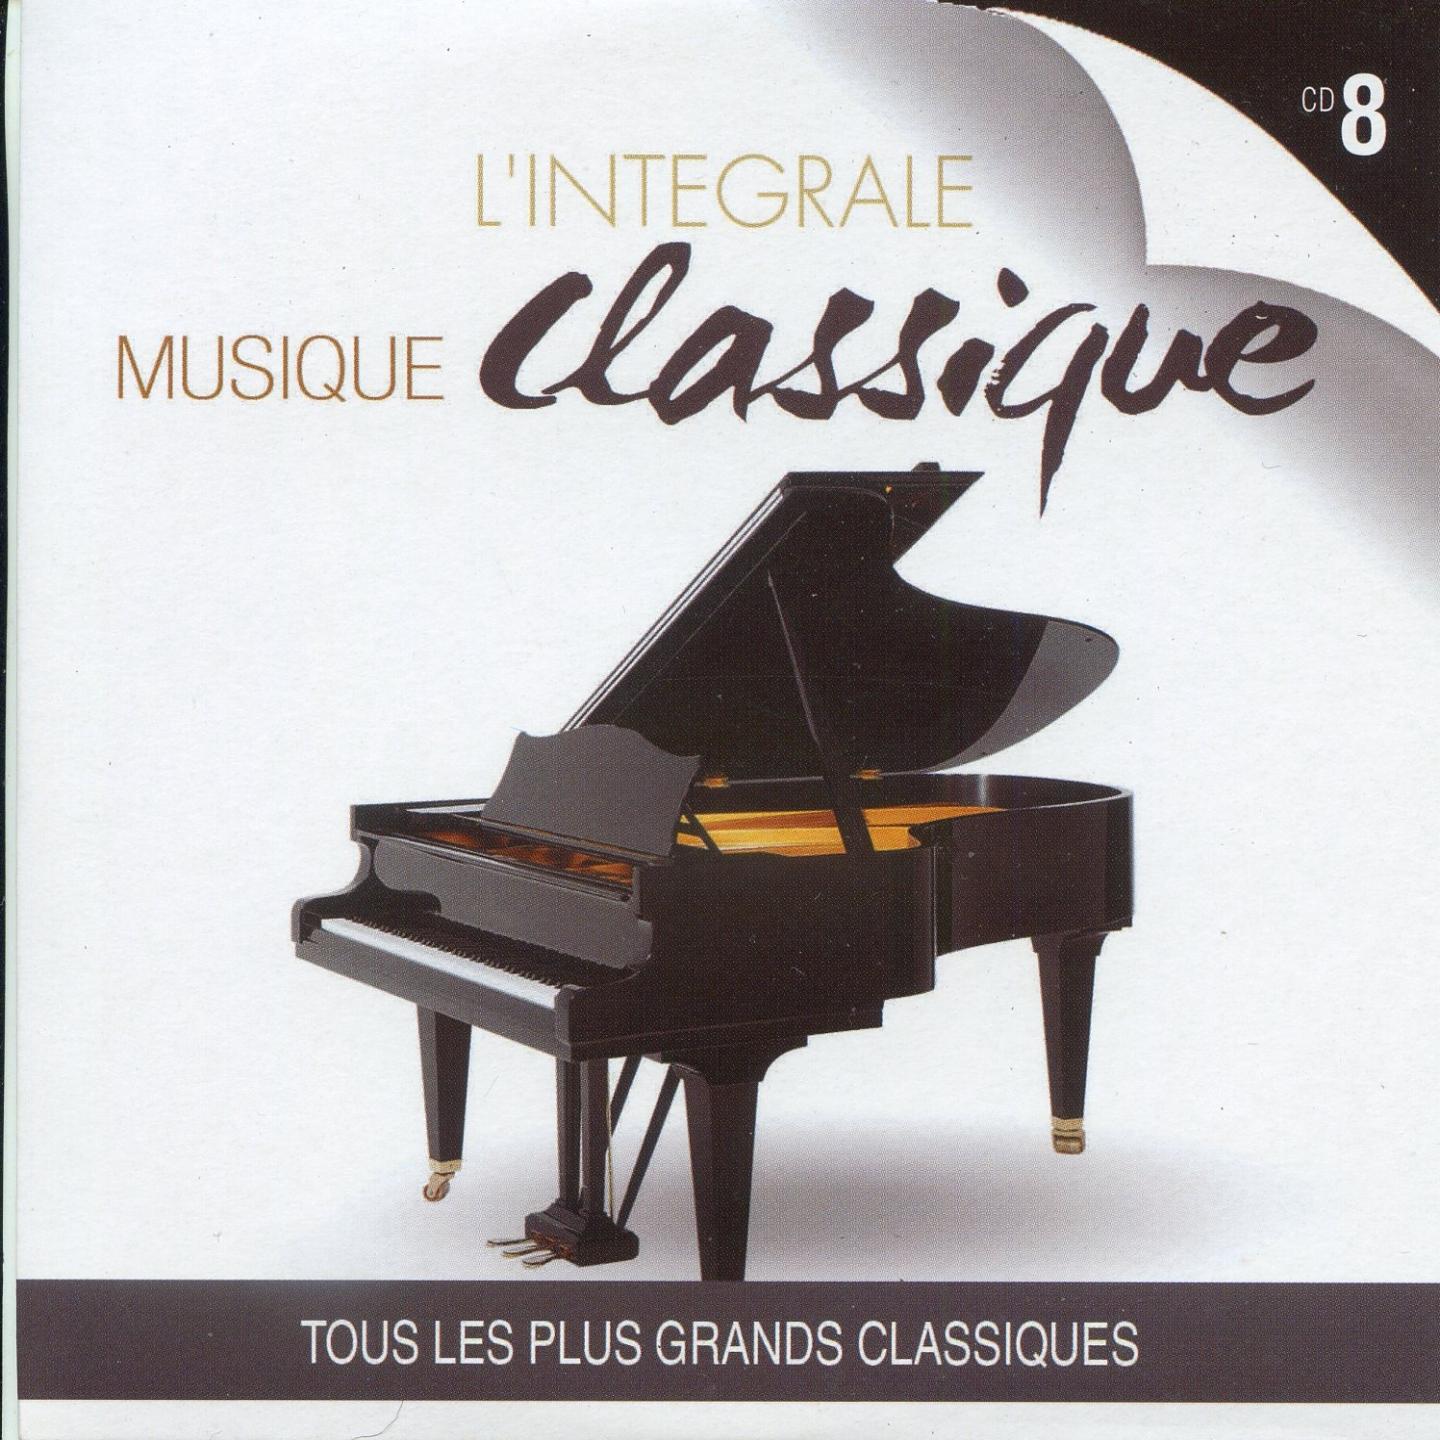 L' inte grale musique classique, vol. 8